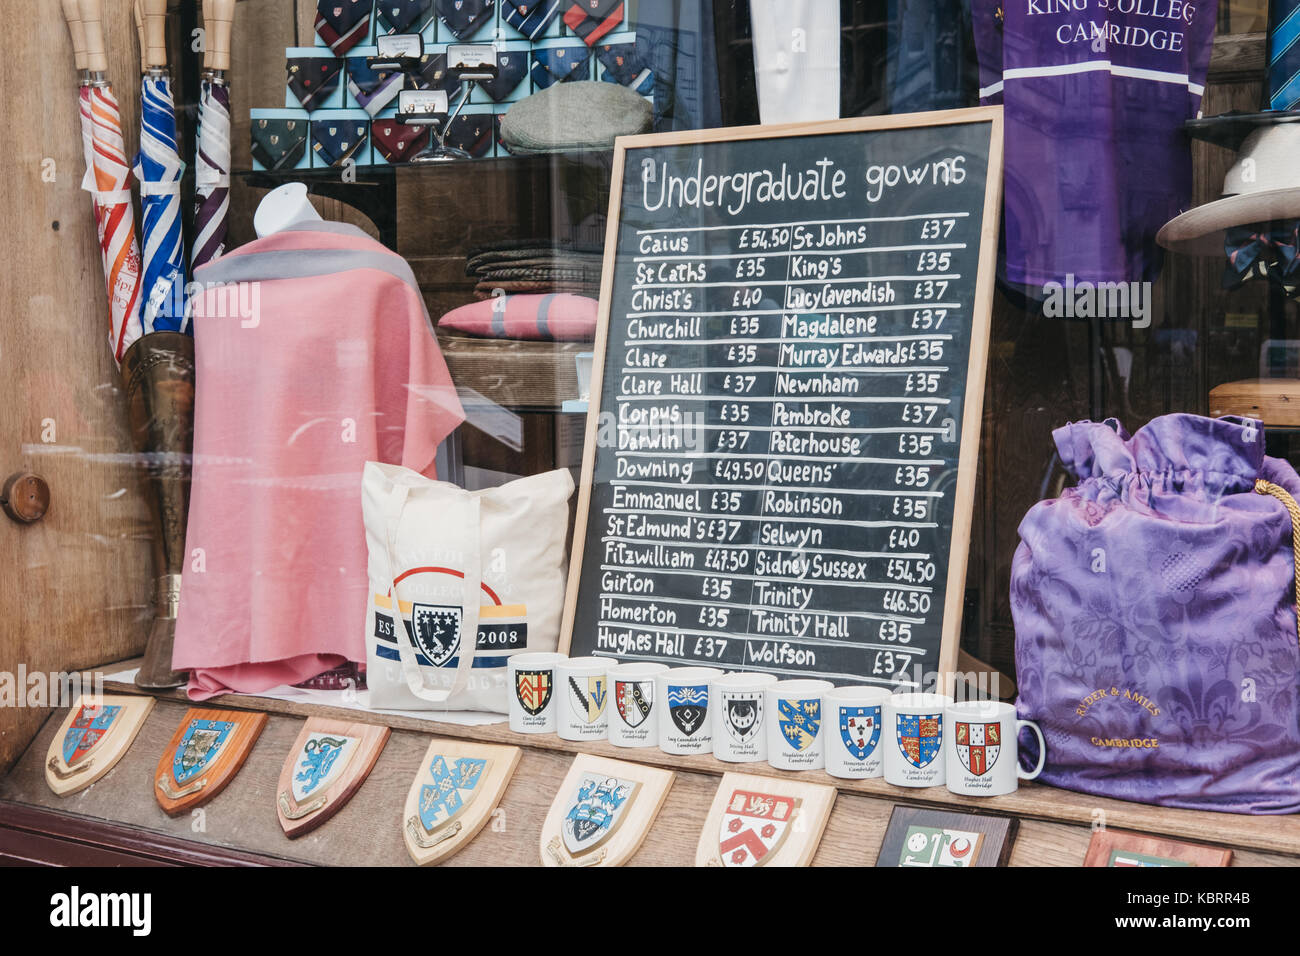 Afficher la fenêtre de Ryder & Amies clothes store où les étudiants et les touristes peuvent acheter des vêtements avec le college crest et voitures robes de cérémonie. Banque D'Images